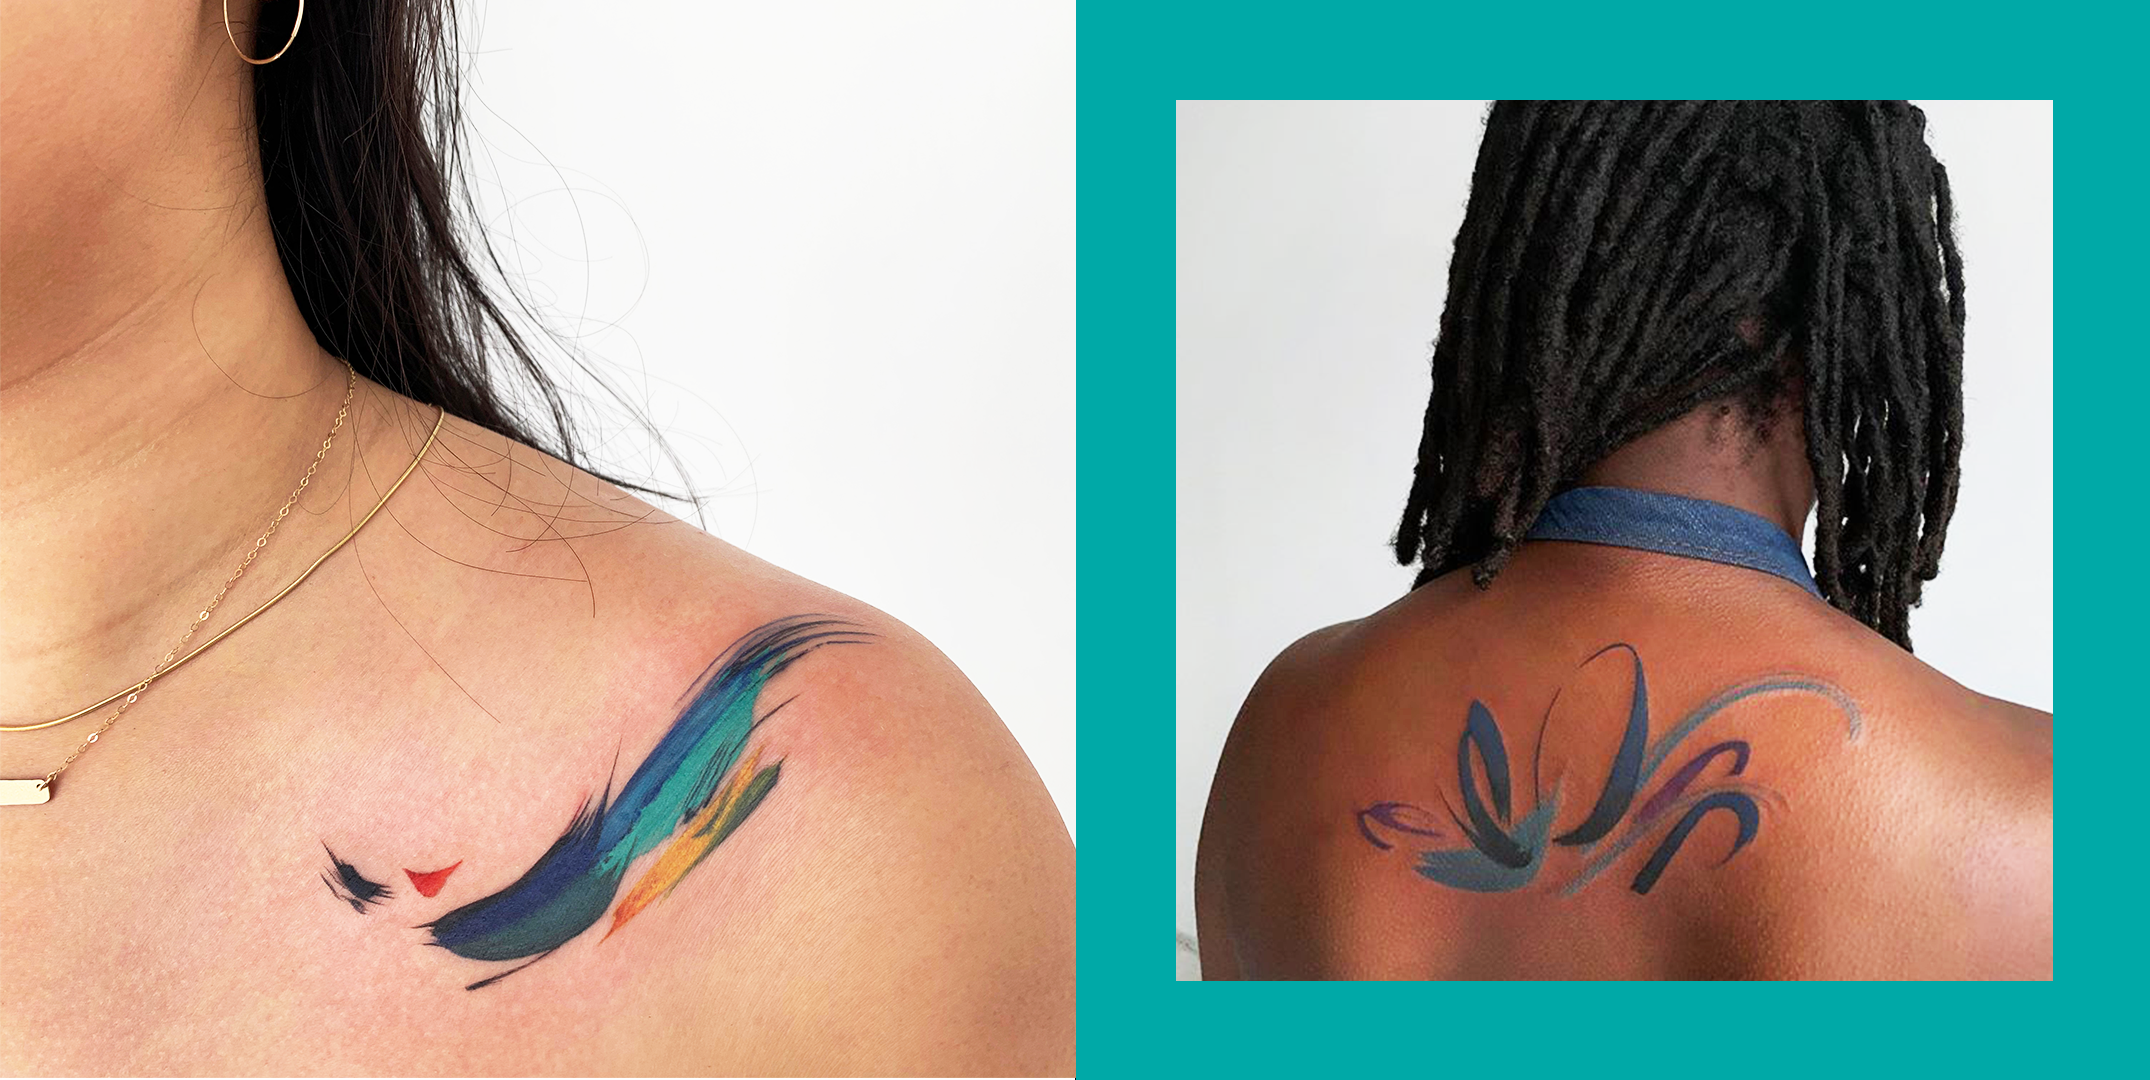 Paint splatter tattoo | Graffiti tattoo, Splatter tattoo, Paint splatter  tattoo